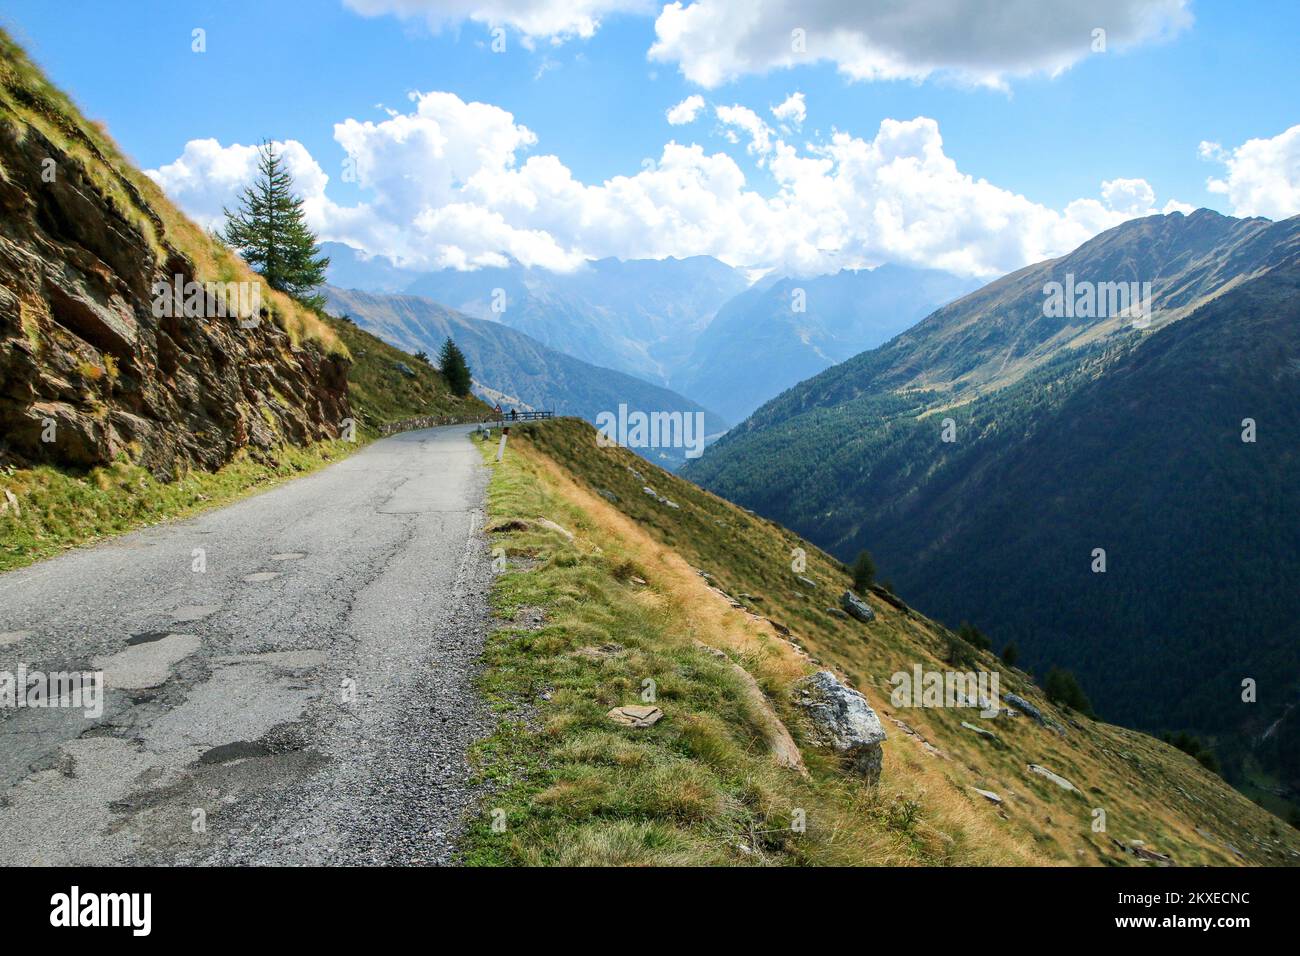 La vista della strada che sale al Passo di Gavia in Italia. La strada stretta e impegnativa verso la cima. Foto Stock